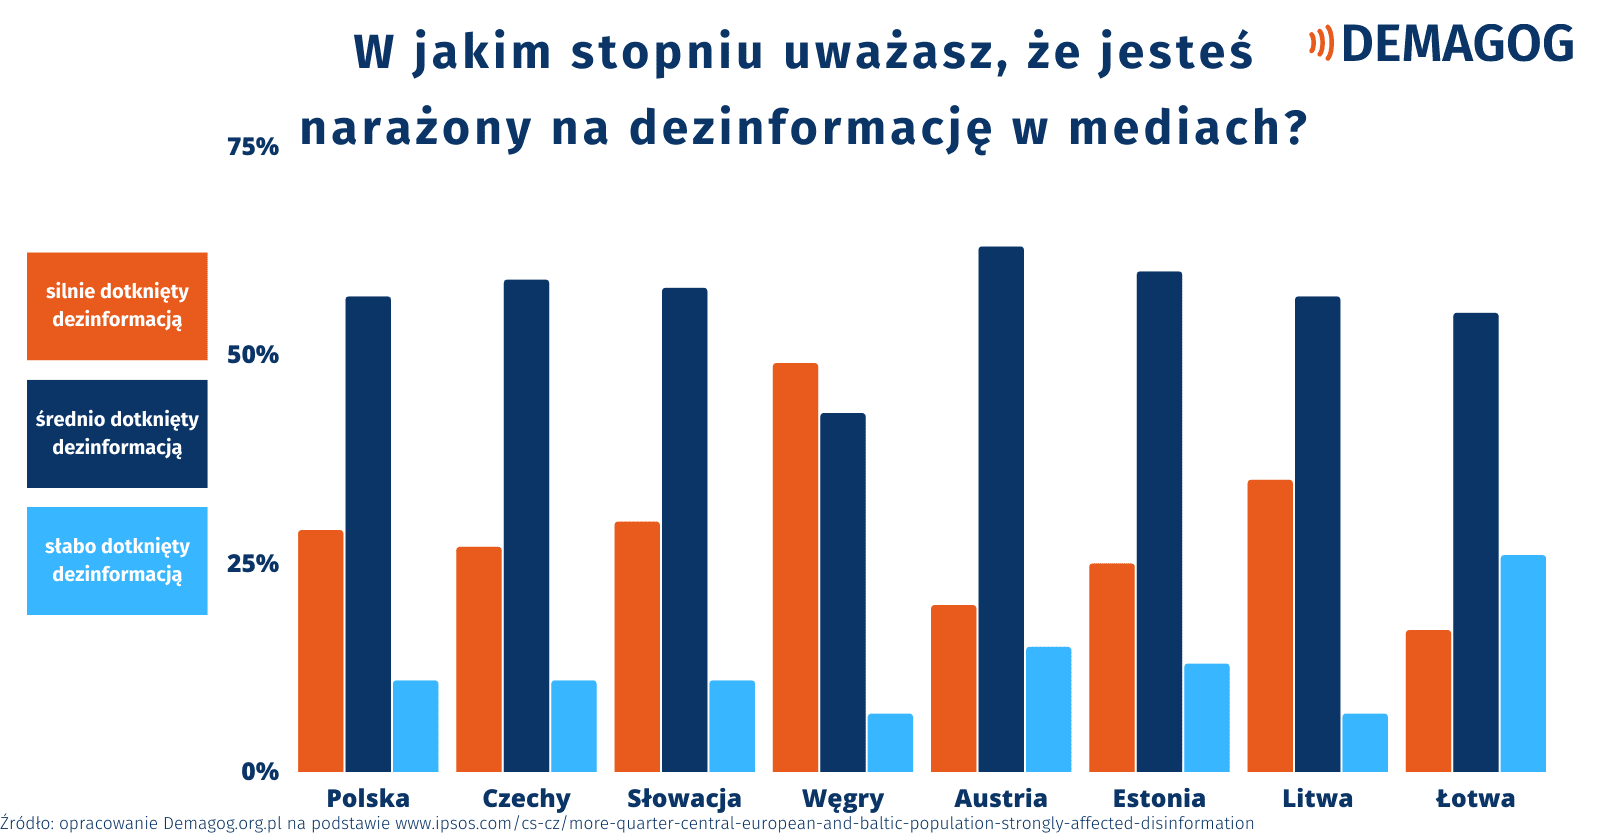 Wykres przedstawiający odpowiedzi mieszkańców poszczególnych badanych krajów na pytanie, w jakim stopniu uważają, że są narażeni na dezinformację w mediach.